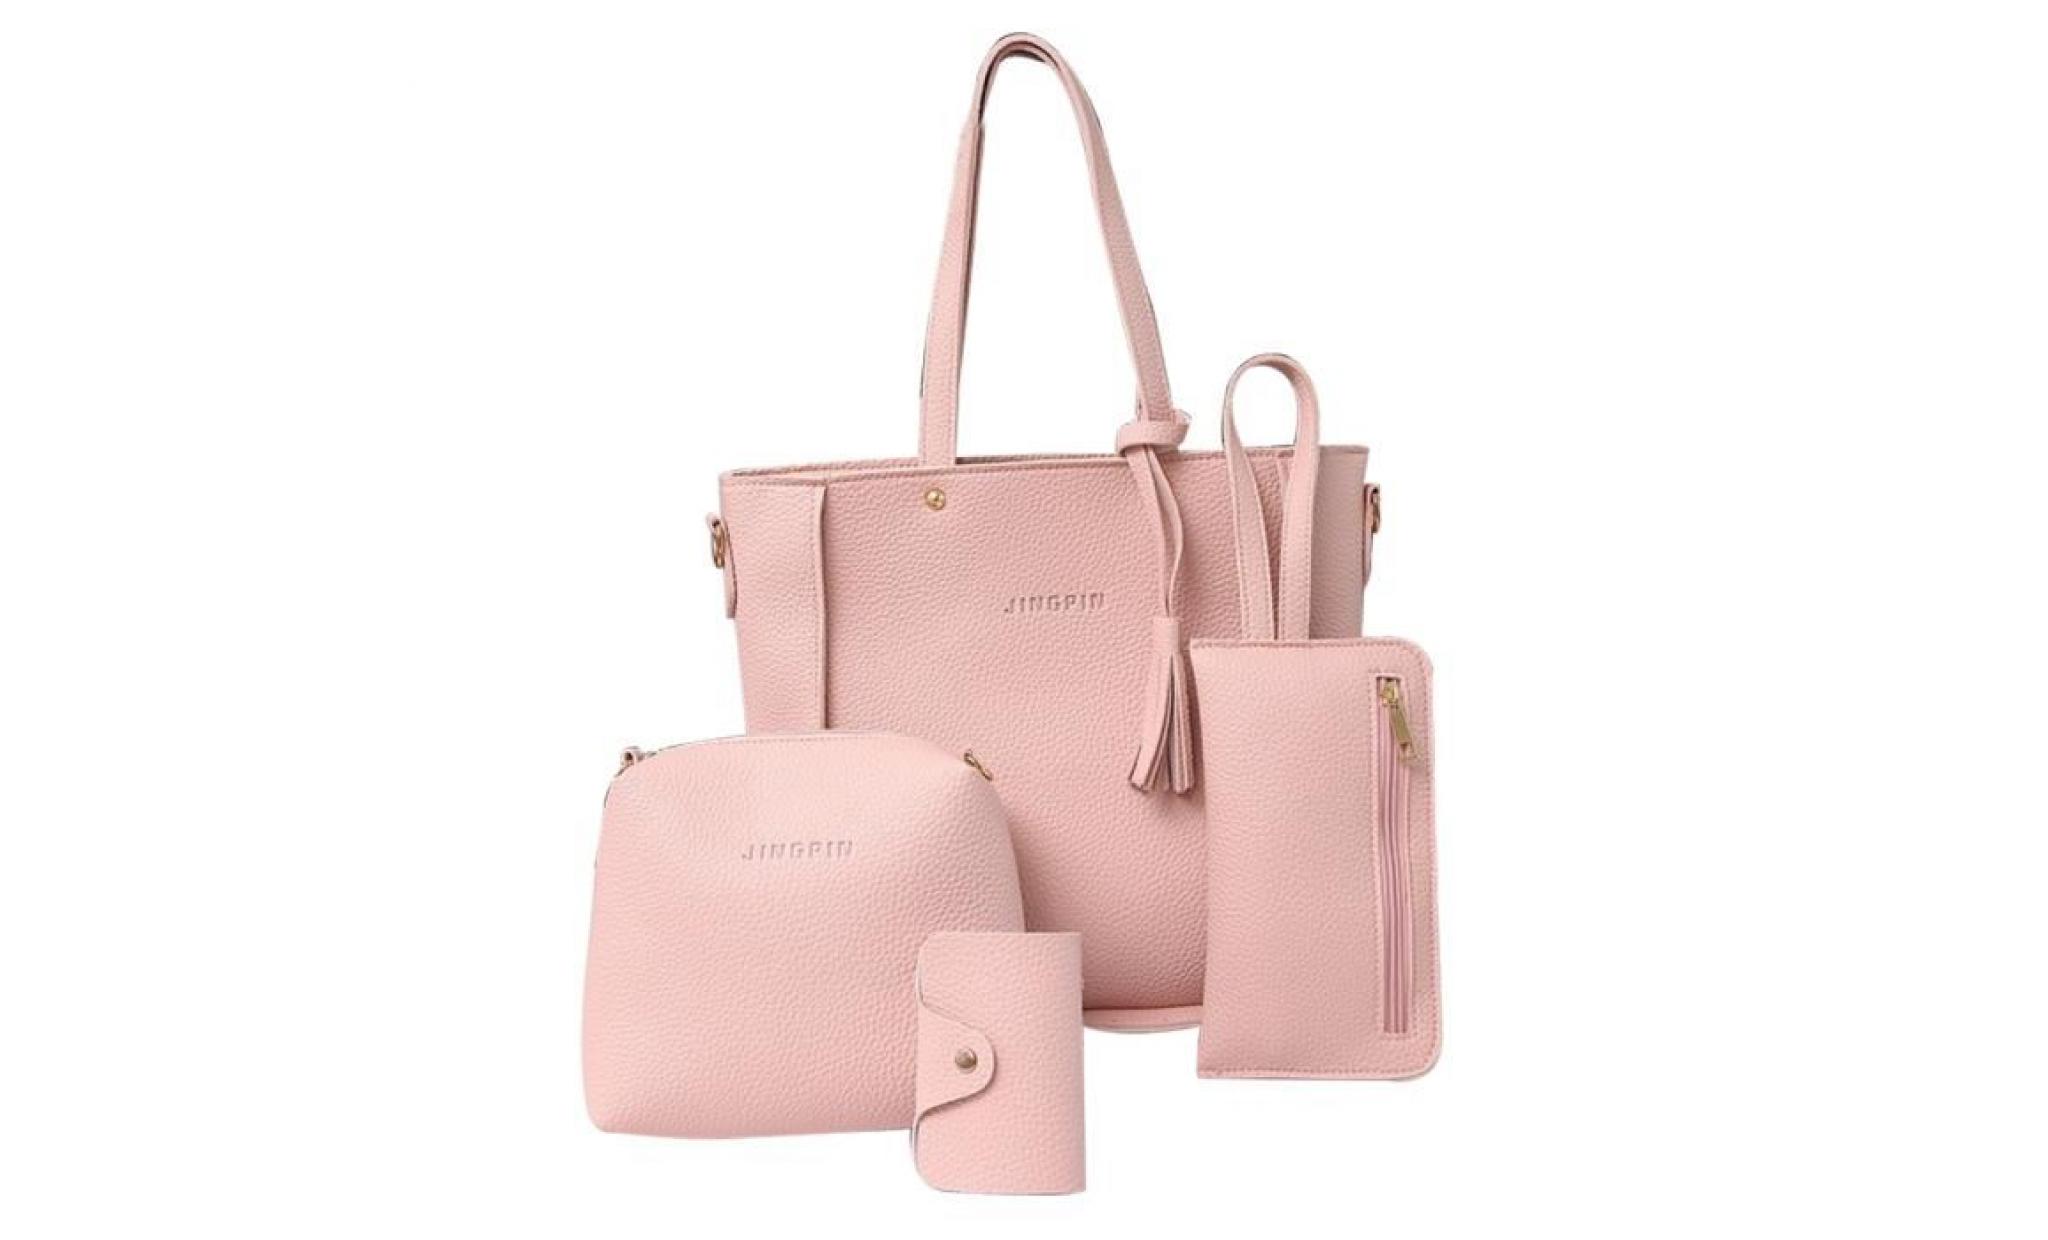 4pcs luxe mode femmes glands portefeuille titulaire de la carte sac à main bandoulière sac ensemble rose